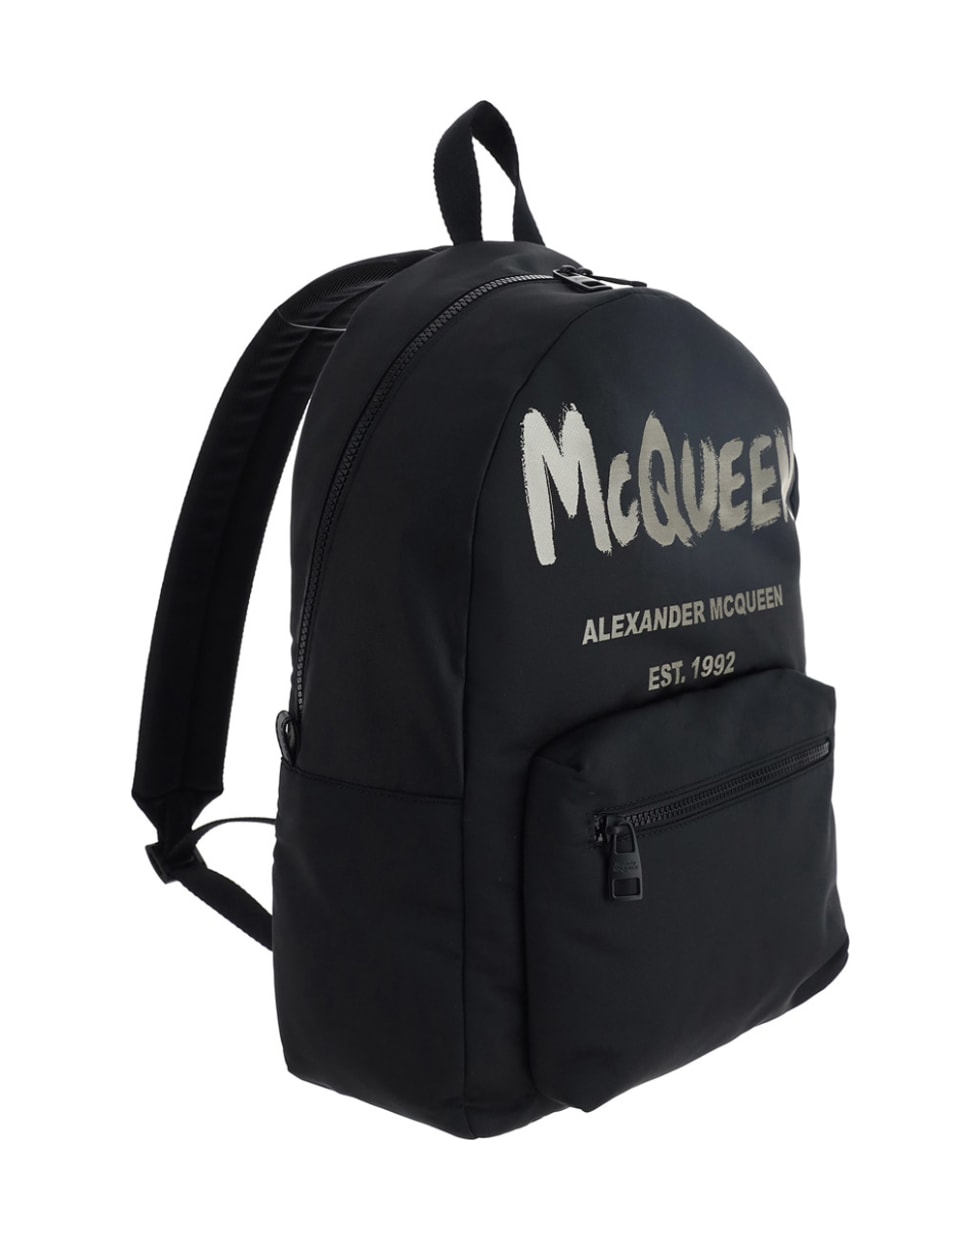 Alexander McQueen Alexander Mc Queen Backpack - Black/off white